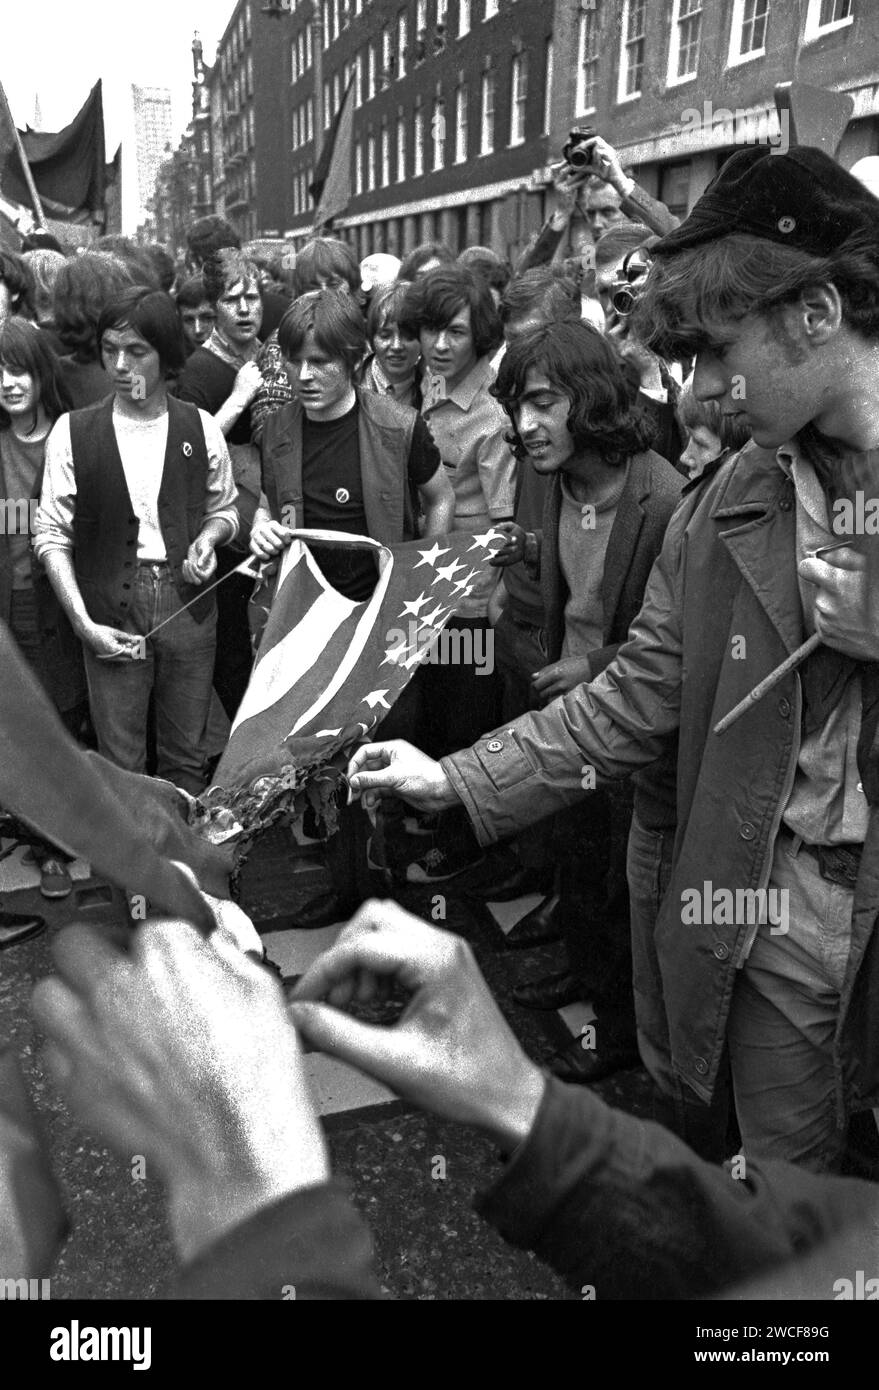 Demonstranten auf der Grosvenor Street in London versuchen, eine amerikanische Flagge in der Nähe der US-Botschaft auf dem Grosvenor Square beim Anti-Vietnam-protestmarsch am 17. März 1968 zu verbrennen. Aufgrund des gewalttätigen Zusammenstoßes zwischen Demonstranten und Polizei wurde dieser massive Protest als „die Schlacht am Grosvenor Square“ bekannt und war die Inspiration für das Lied „Street Fighting man“ der Rolling Stones. Stockfoto